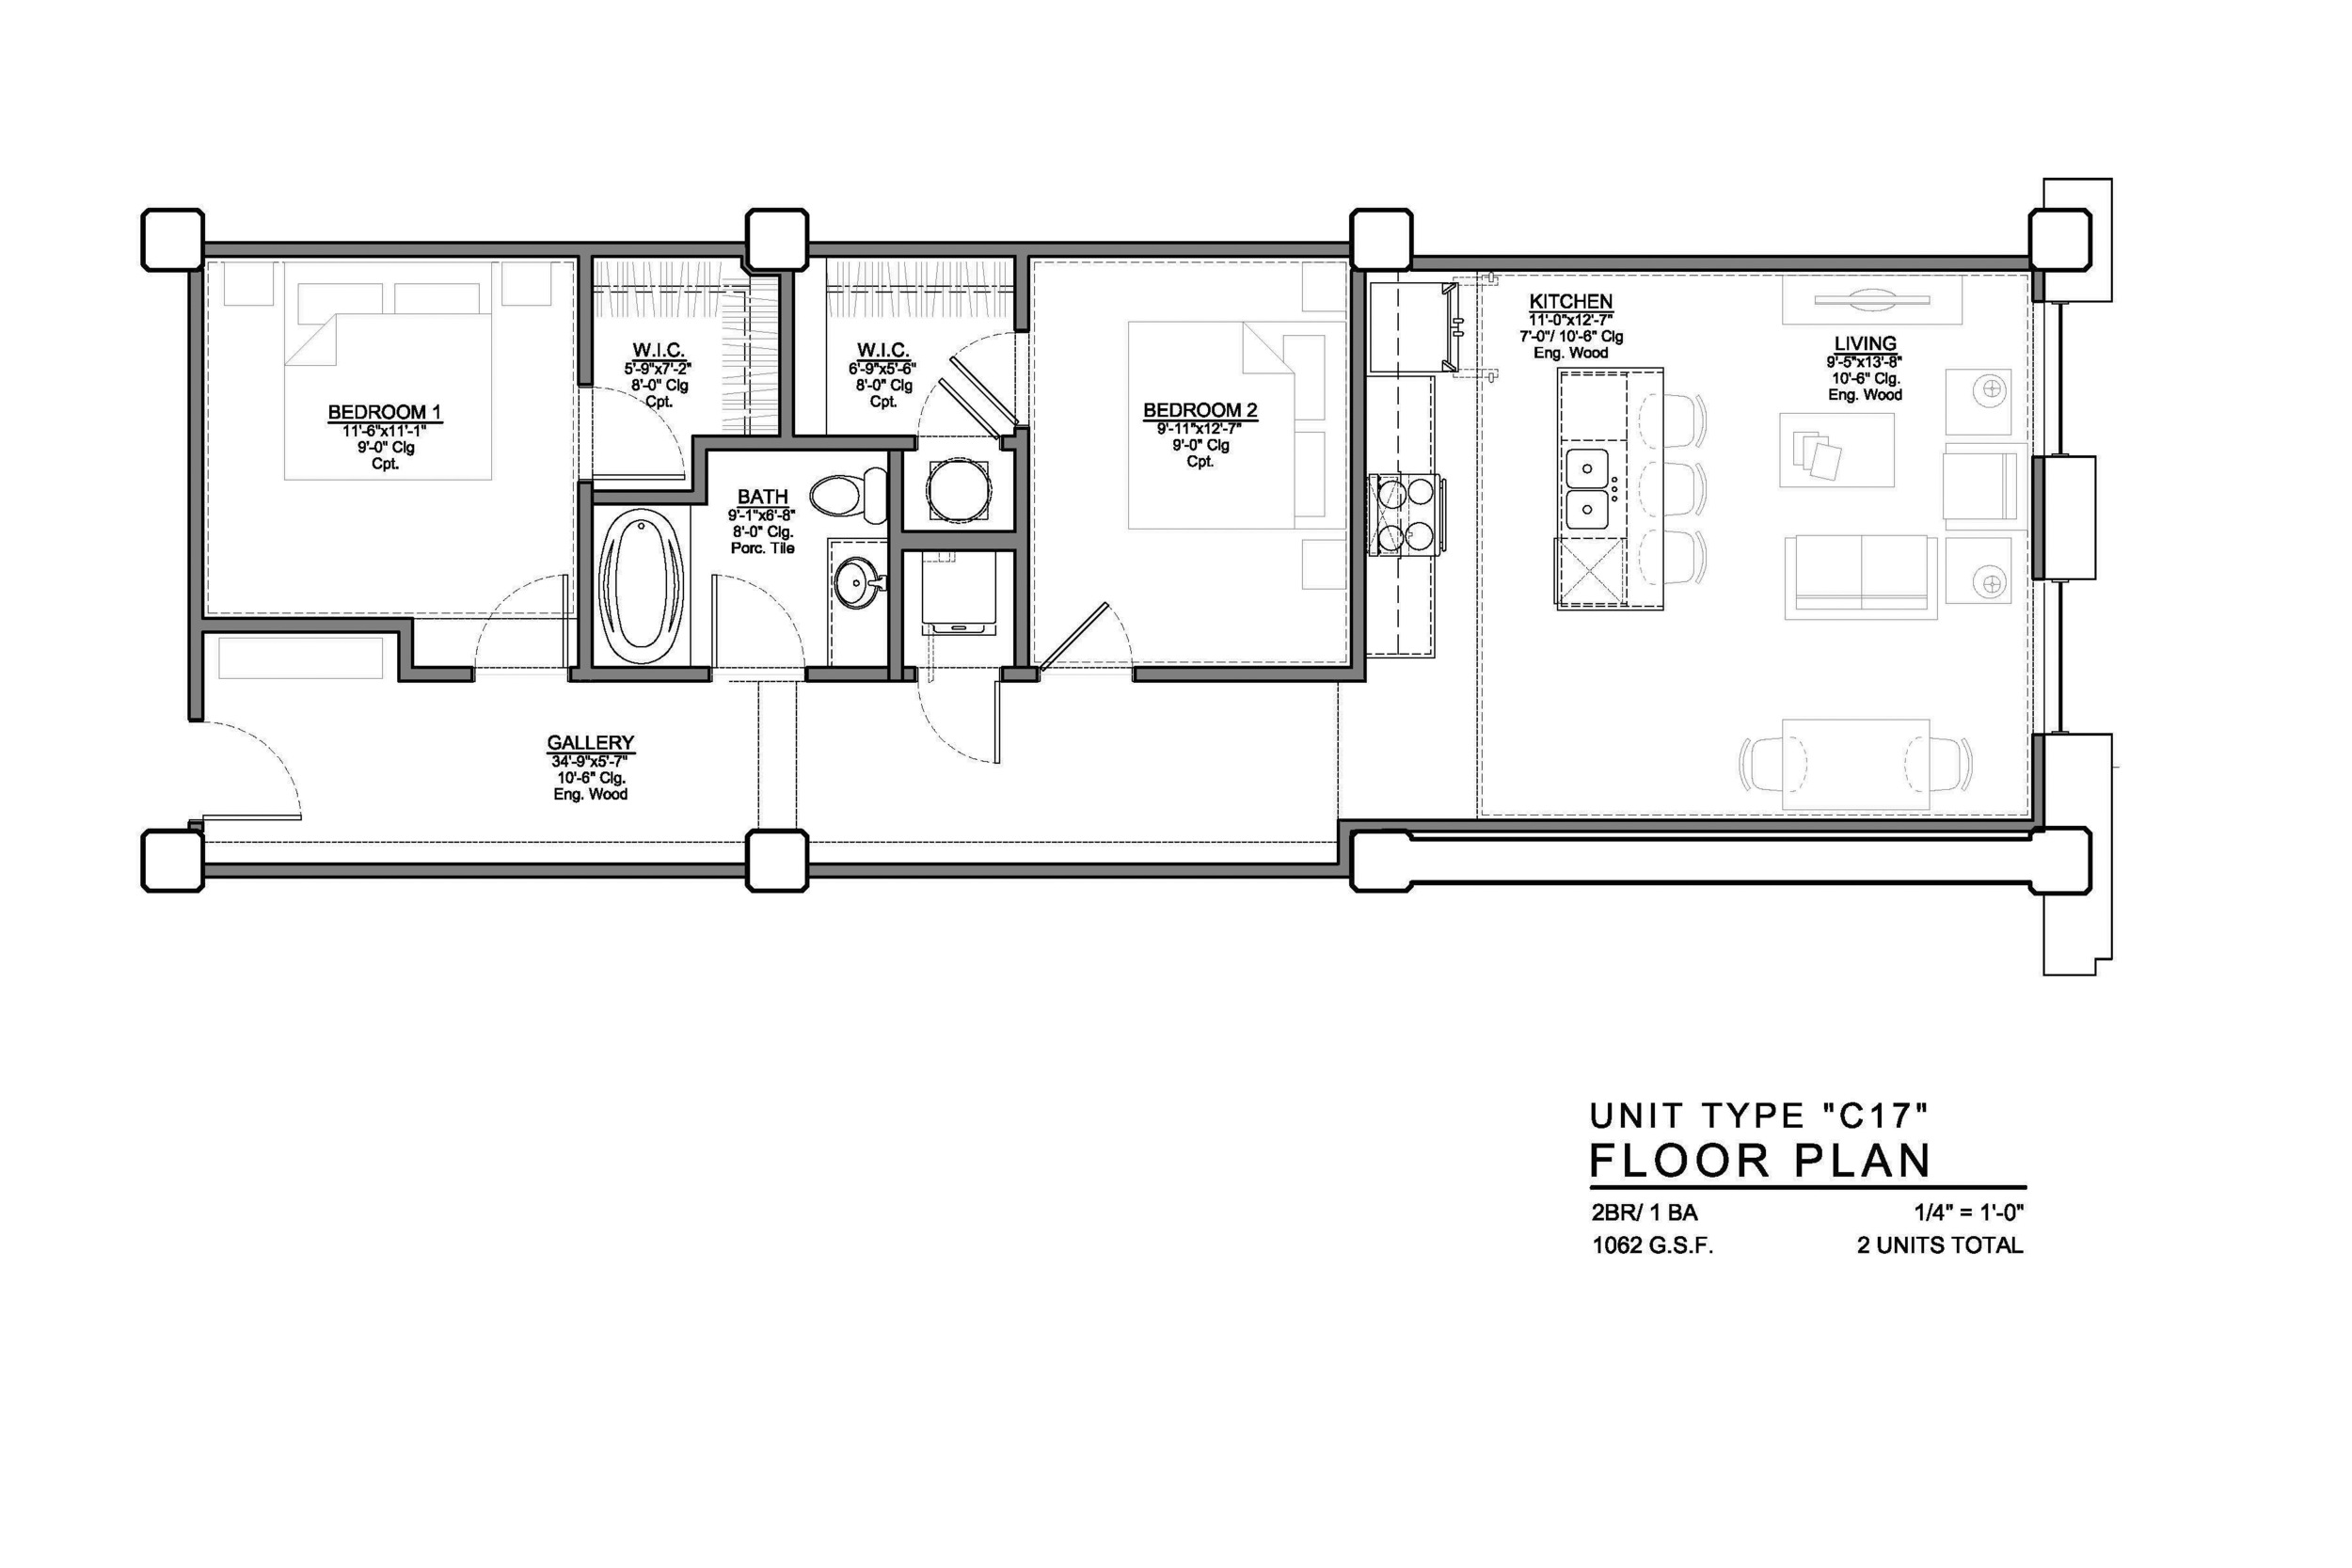 C17 FLOOR PLAN: 2 BEDROOM / 1 BATH